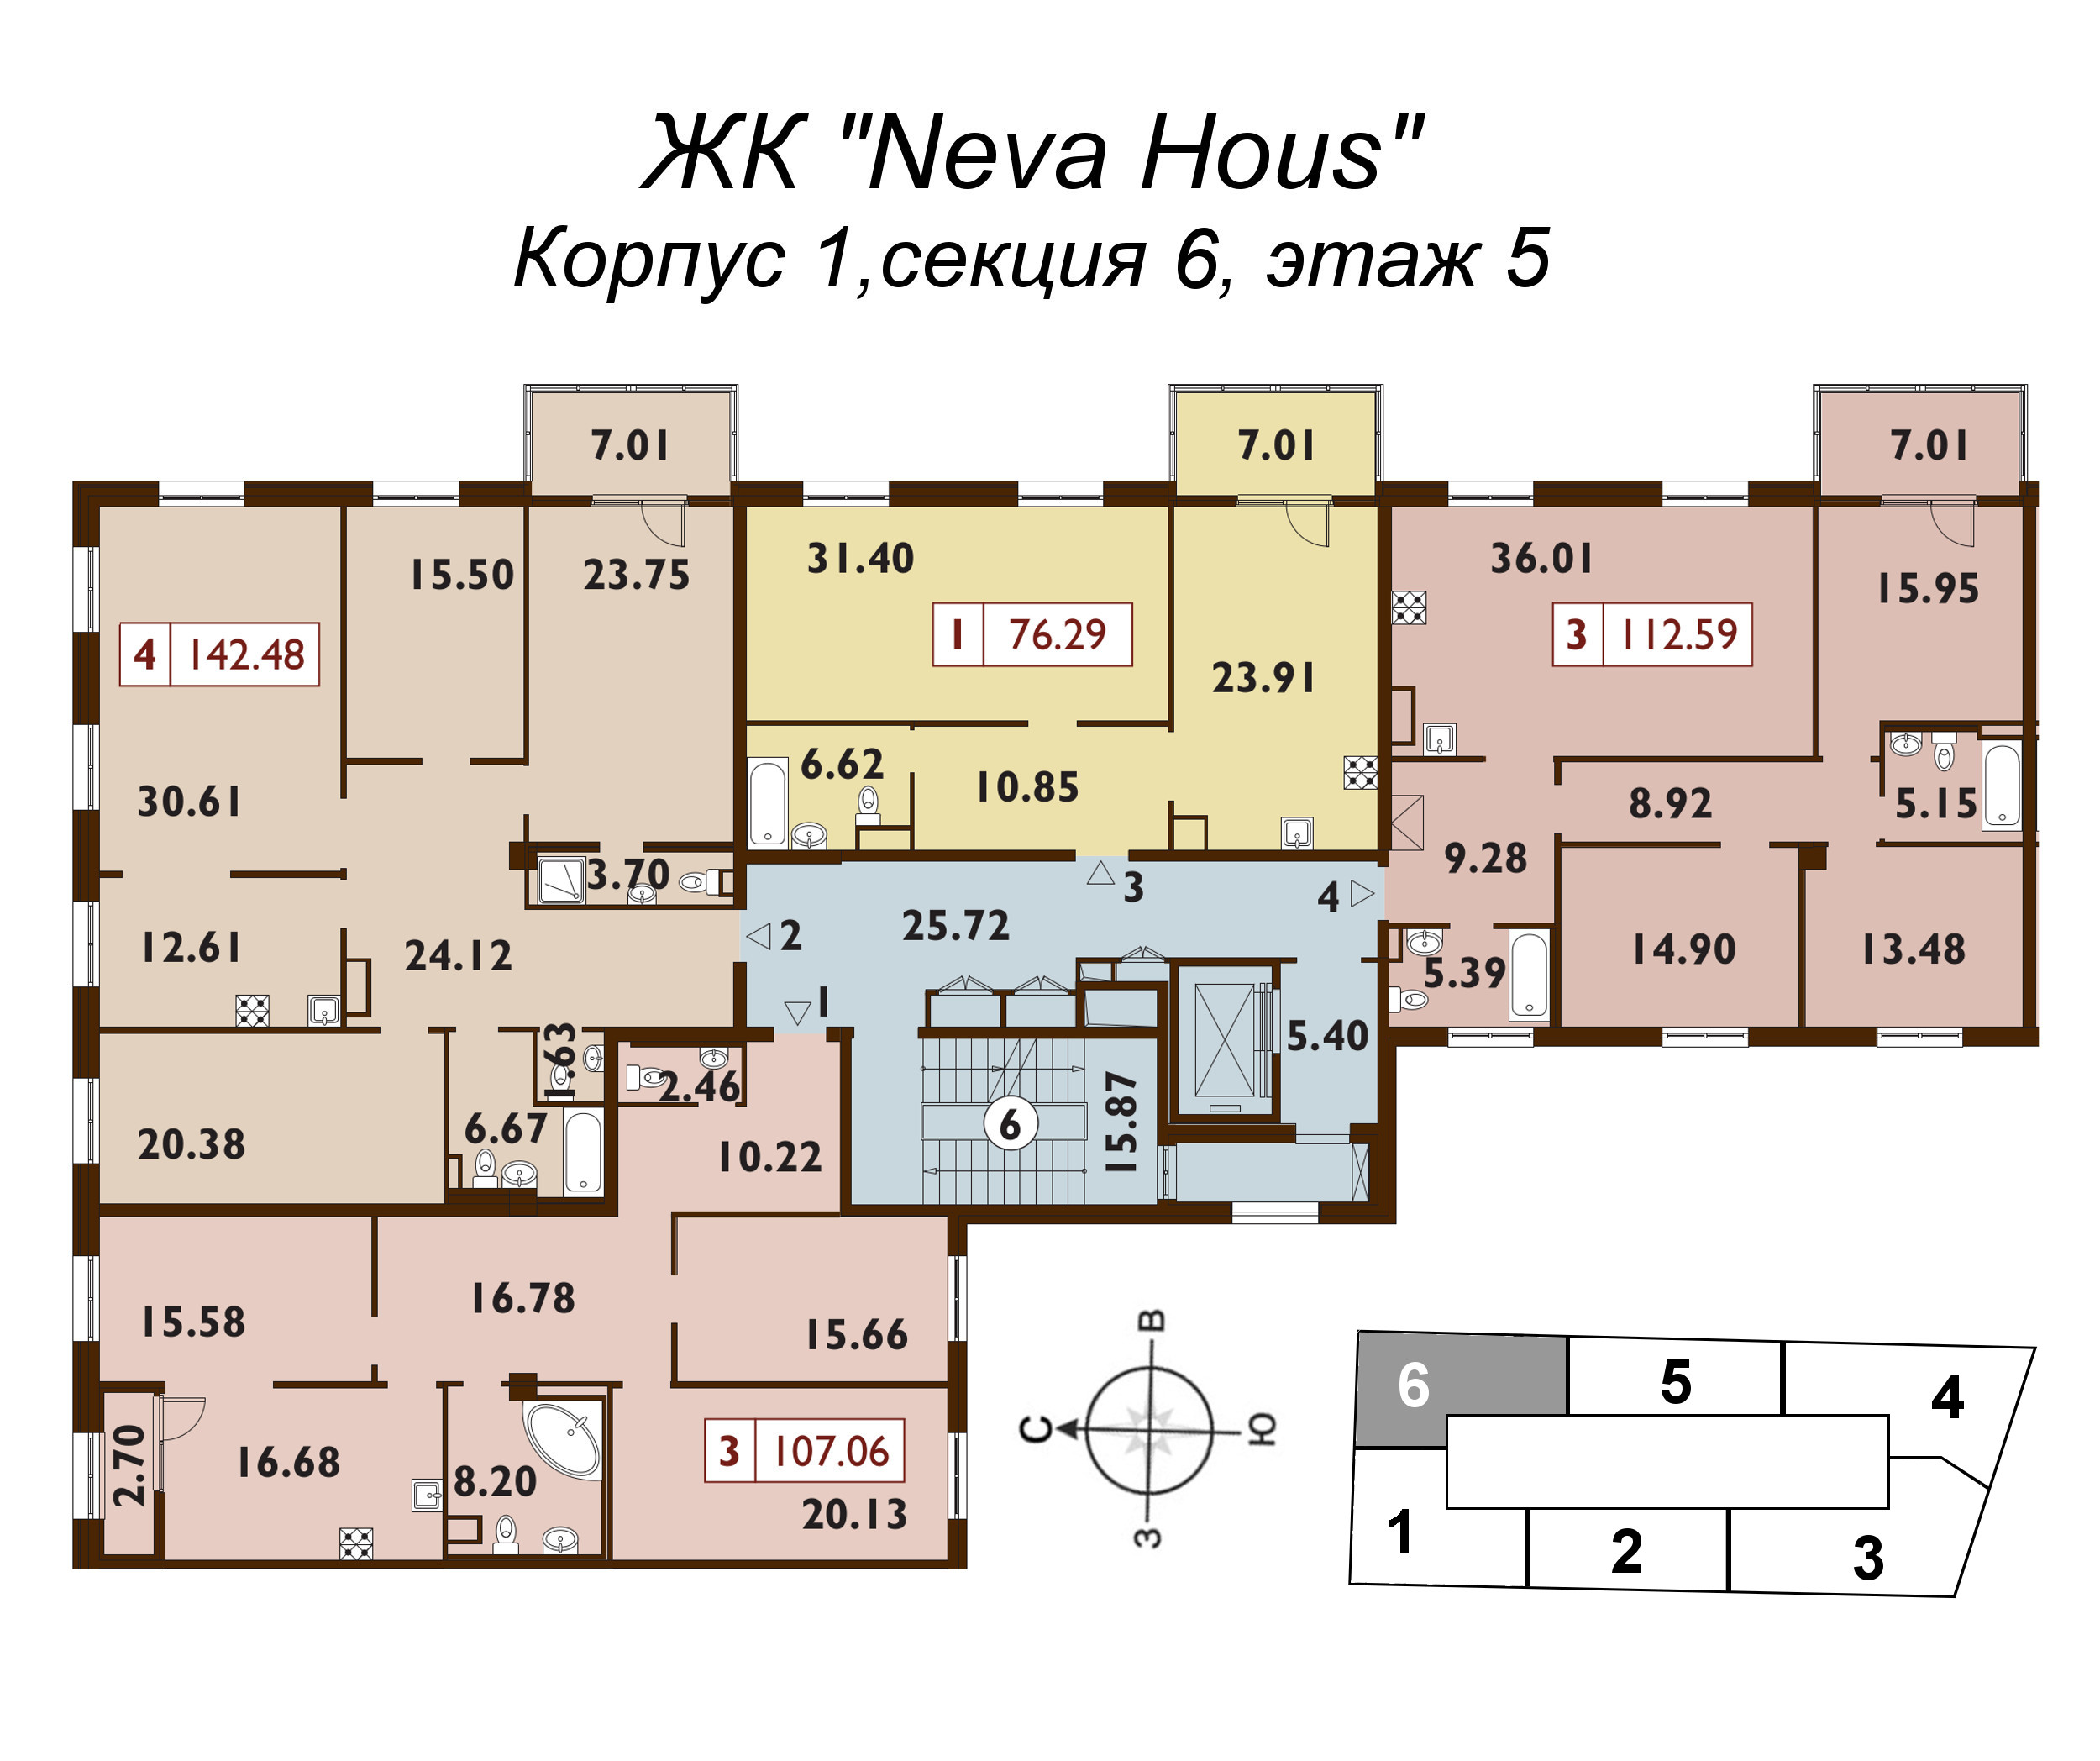 4-комнатная квартира, 142 м² в ЖК "Neva Haus" - планировка этажа